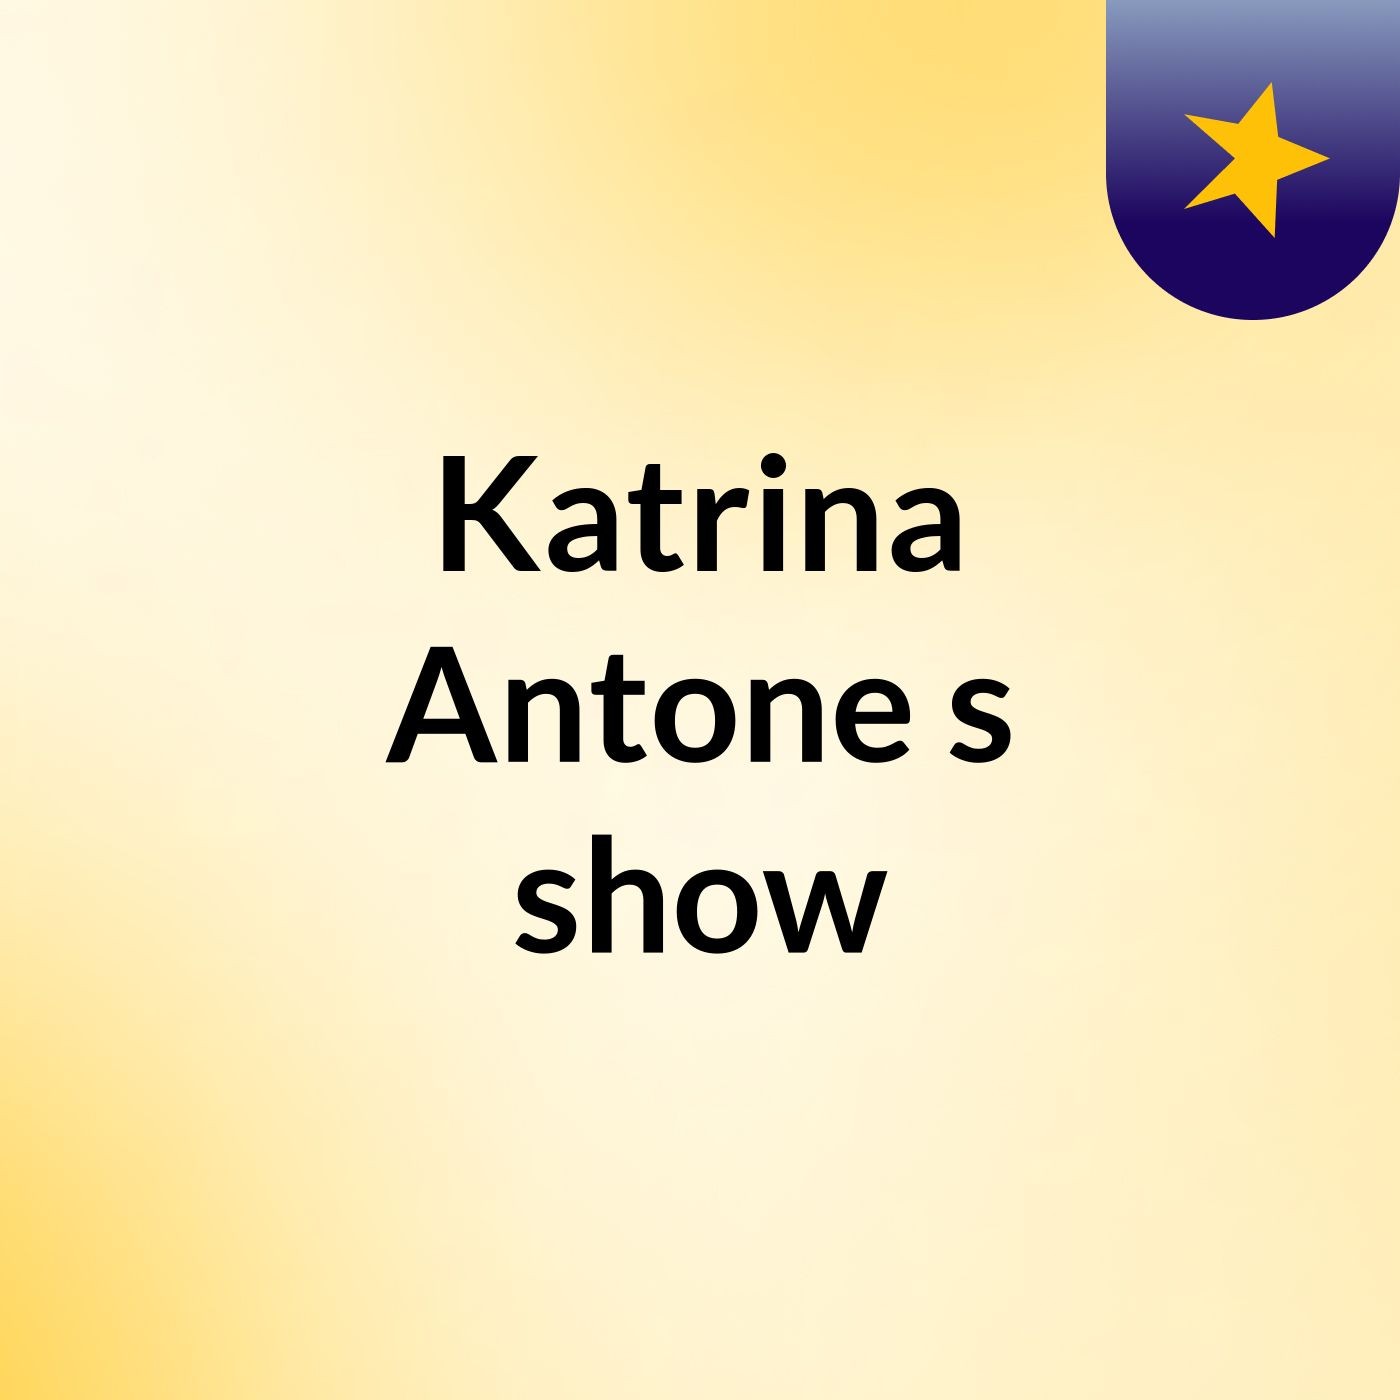 Katrina Antone's show